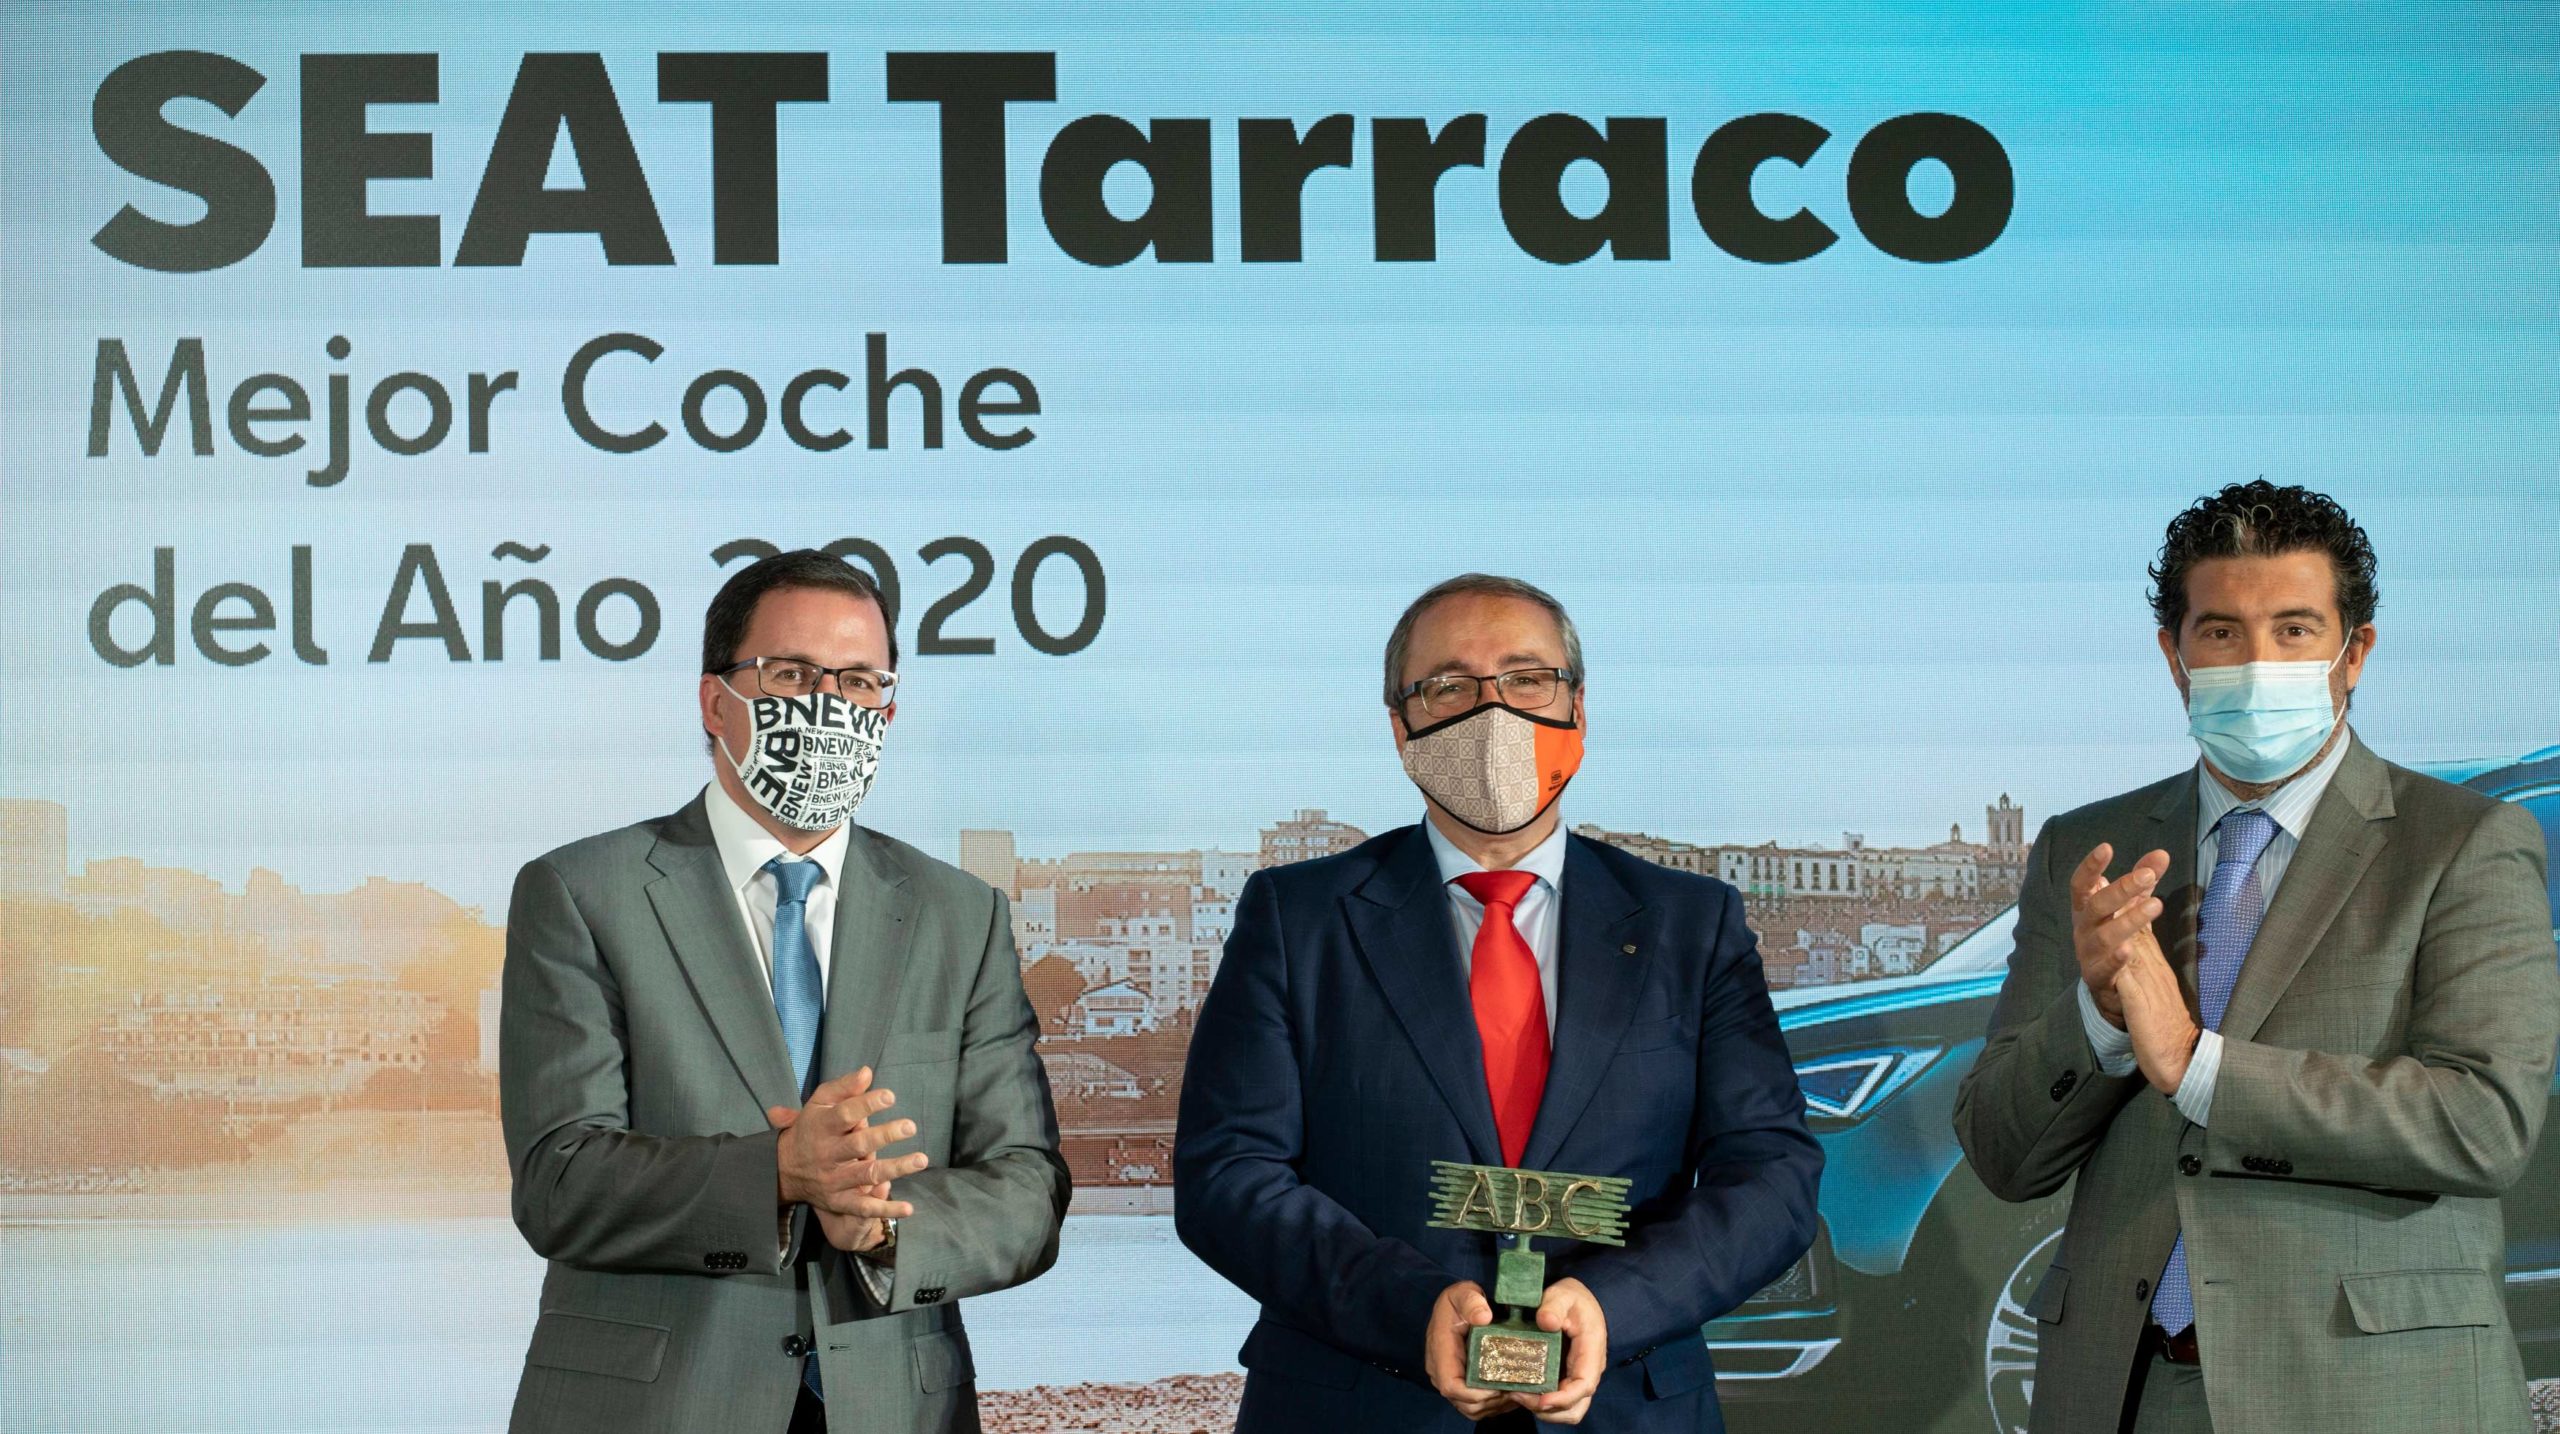 SEAT Tarraco, recibe el premio ABC Mejor Coche del Año 2020